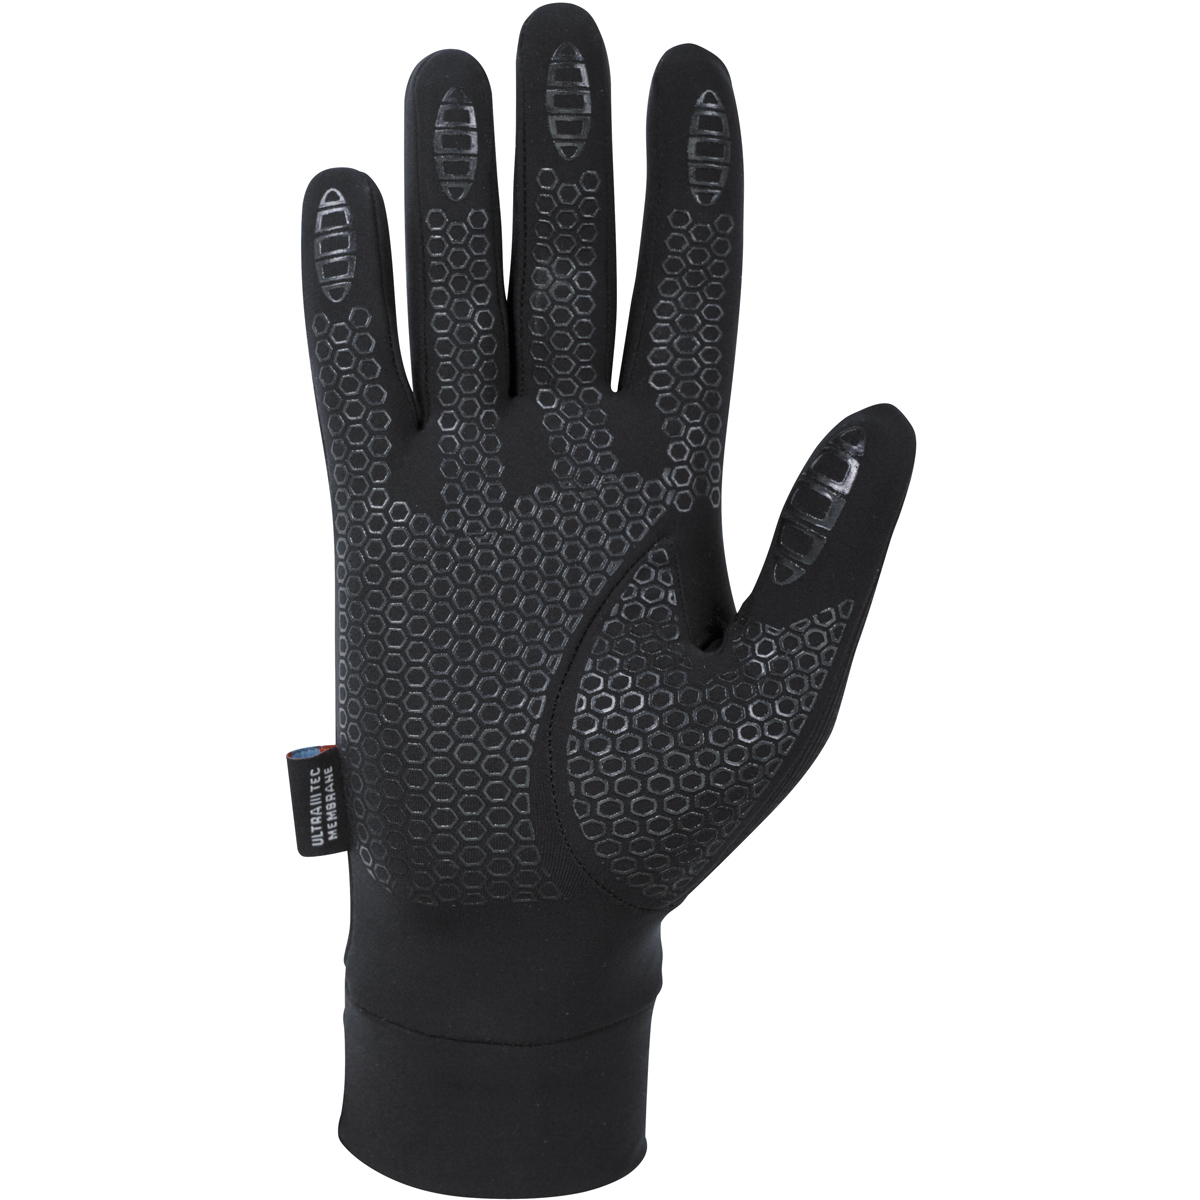 SKIN WS - Gloves